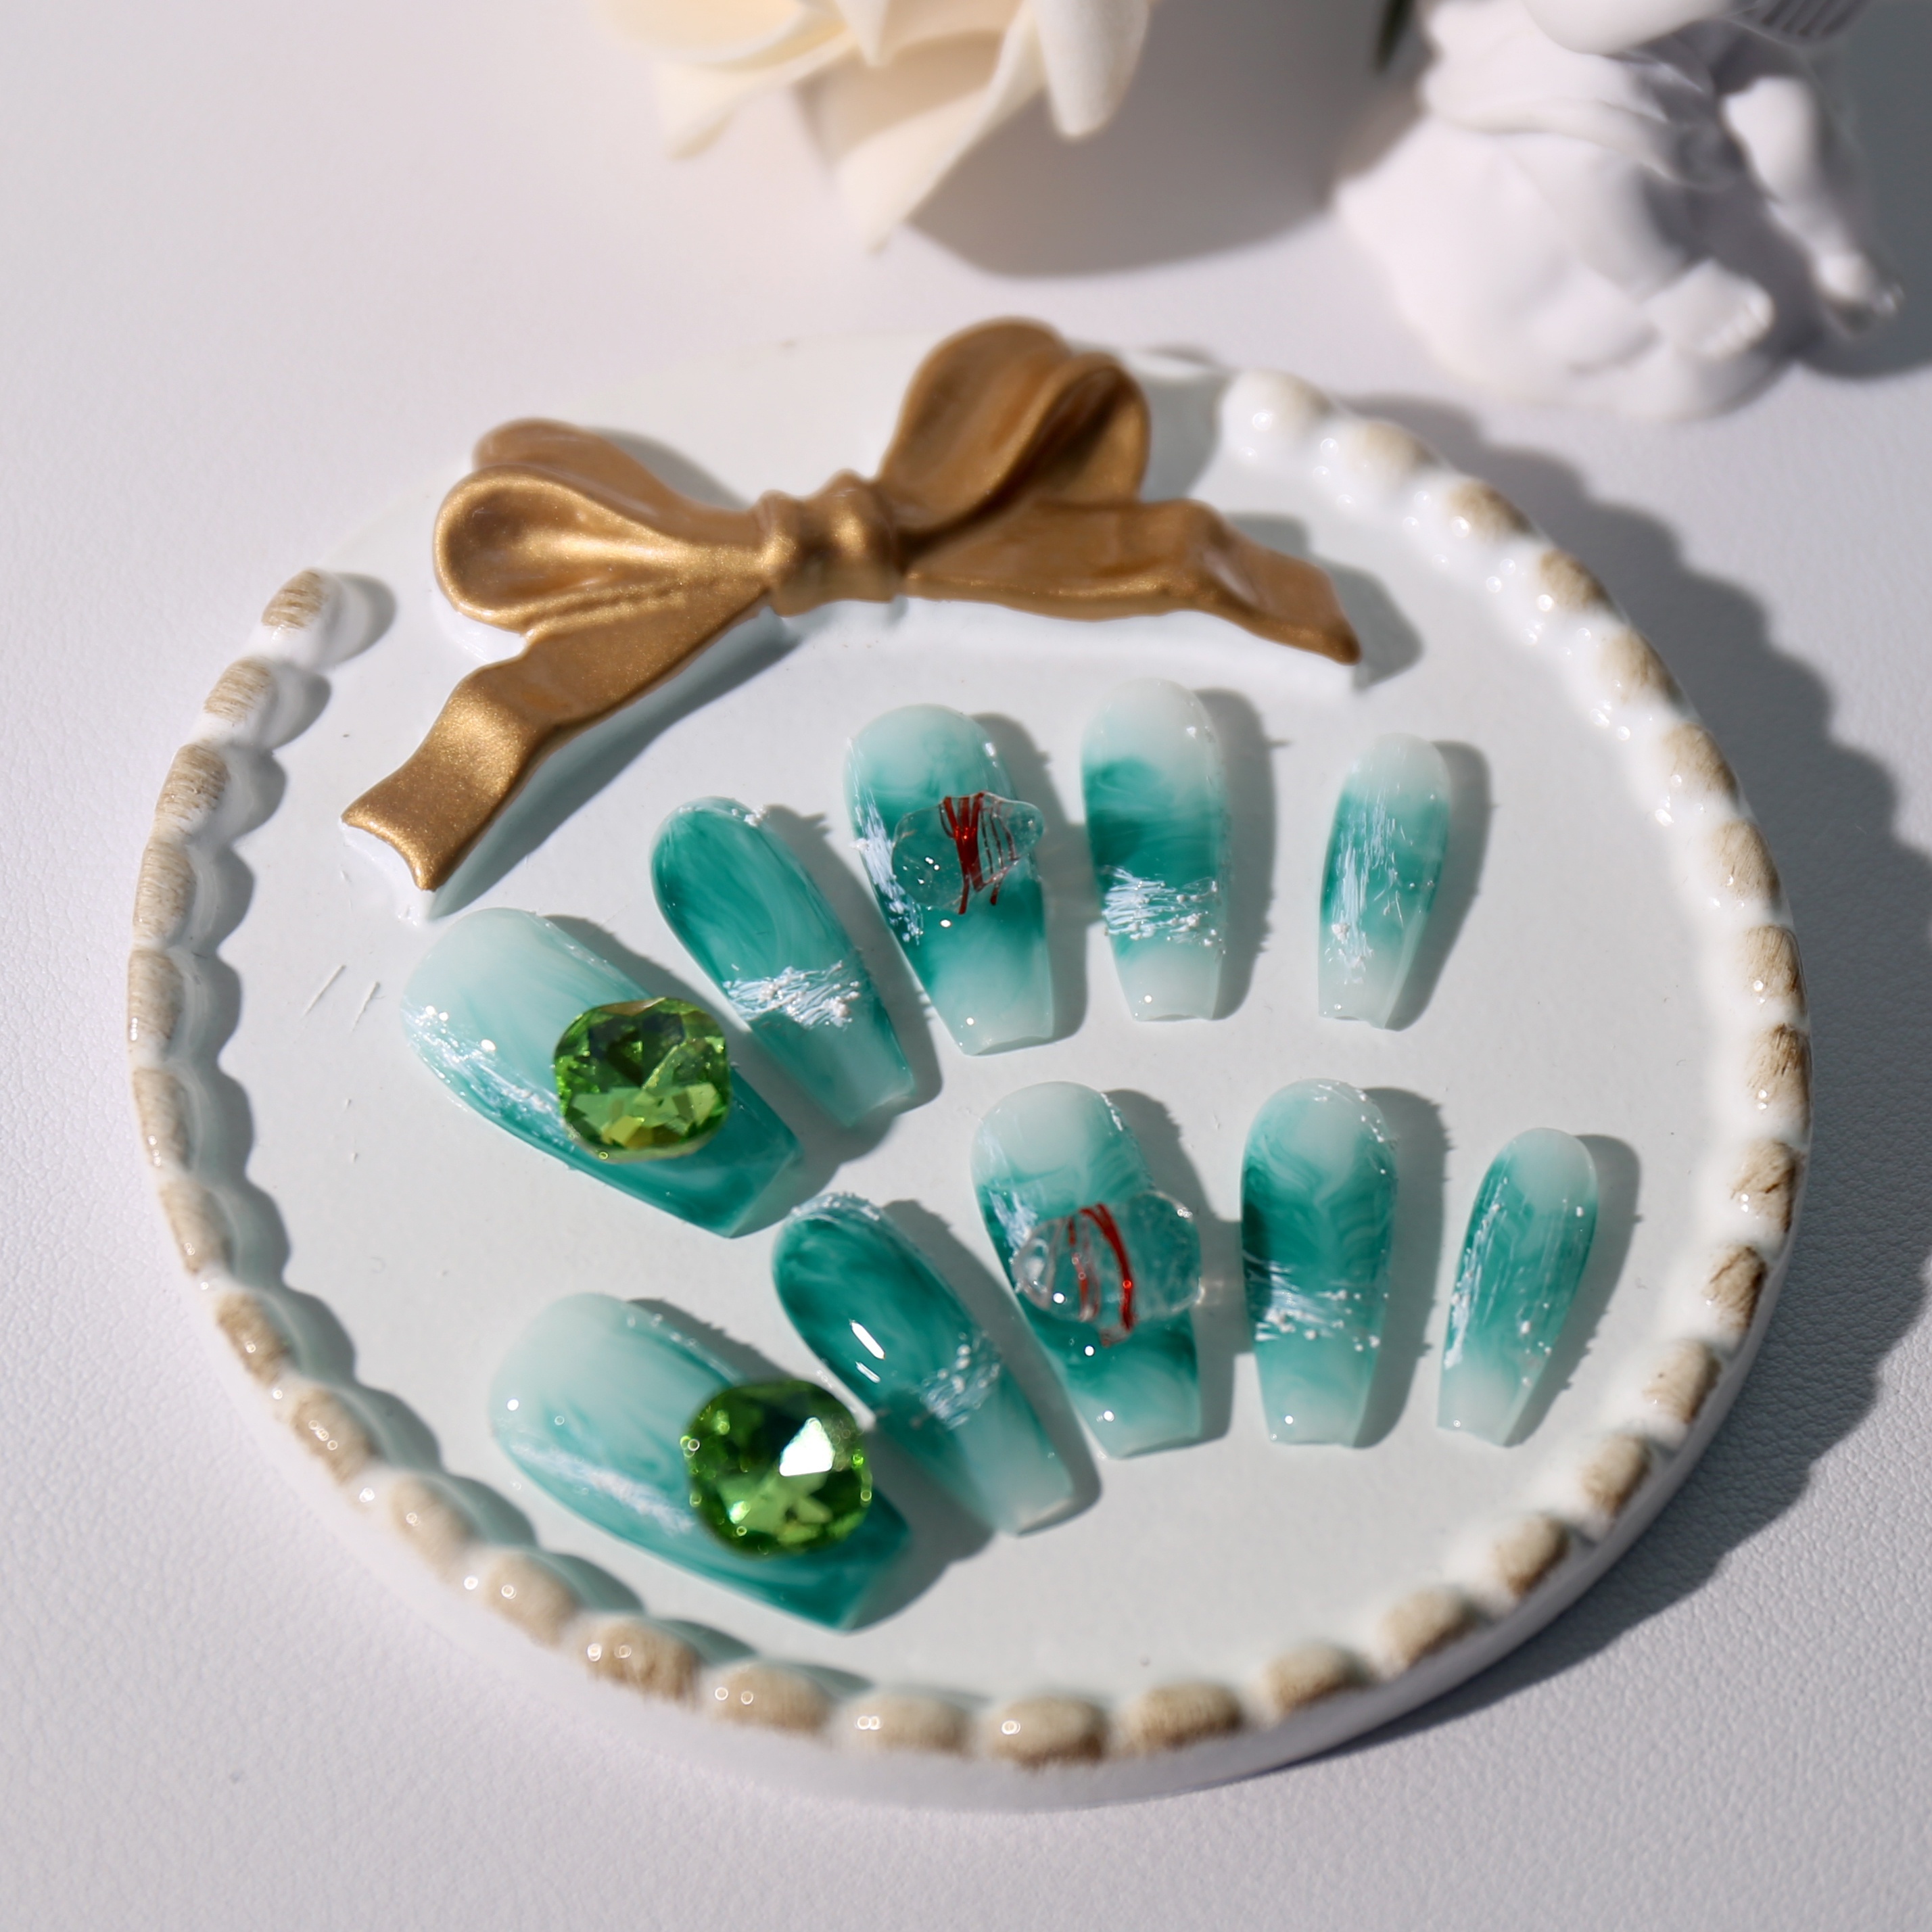 Jade polygel nails with gold flakes : r/Polygel